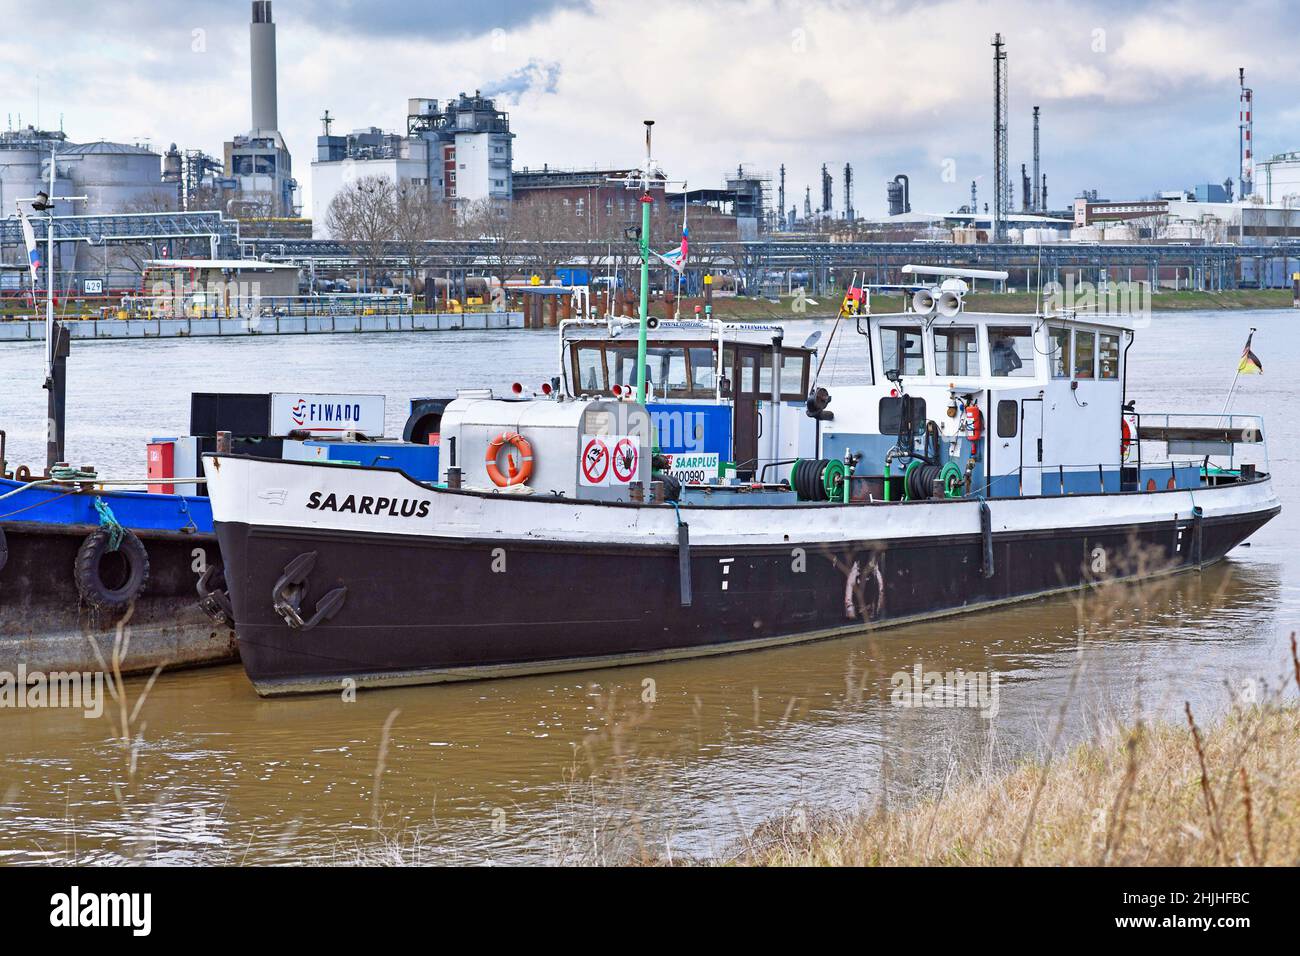 Mannheim, Deutschland - Januar 2022: Bunkerschiff 'Saarplus' ein Boot, das am rhein verankert ist Stockfoto